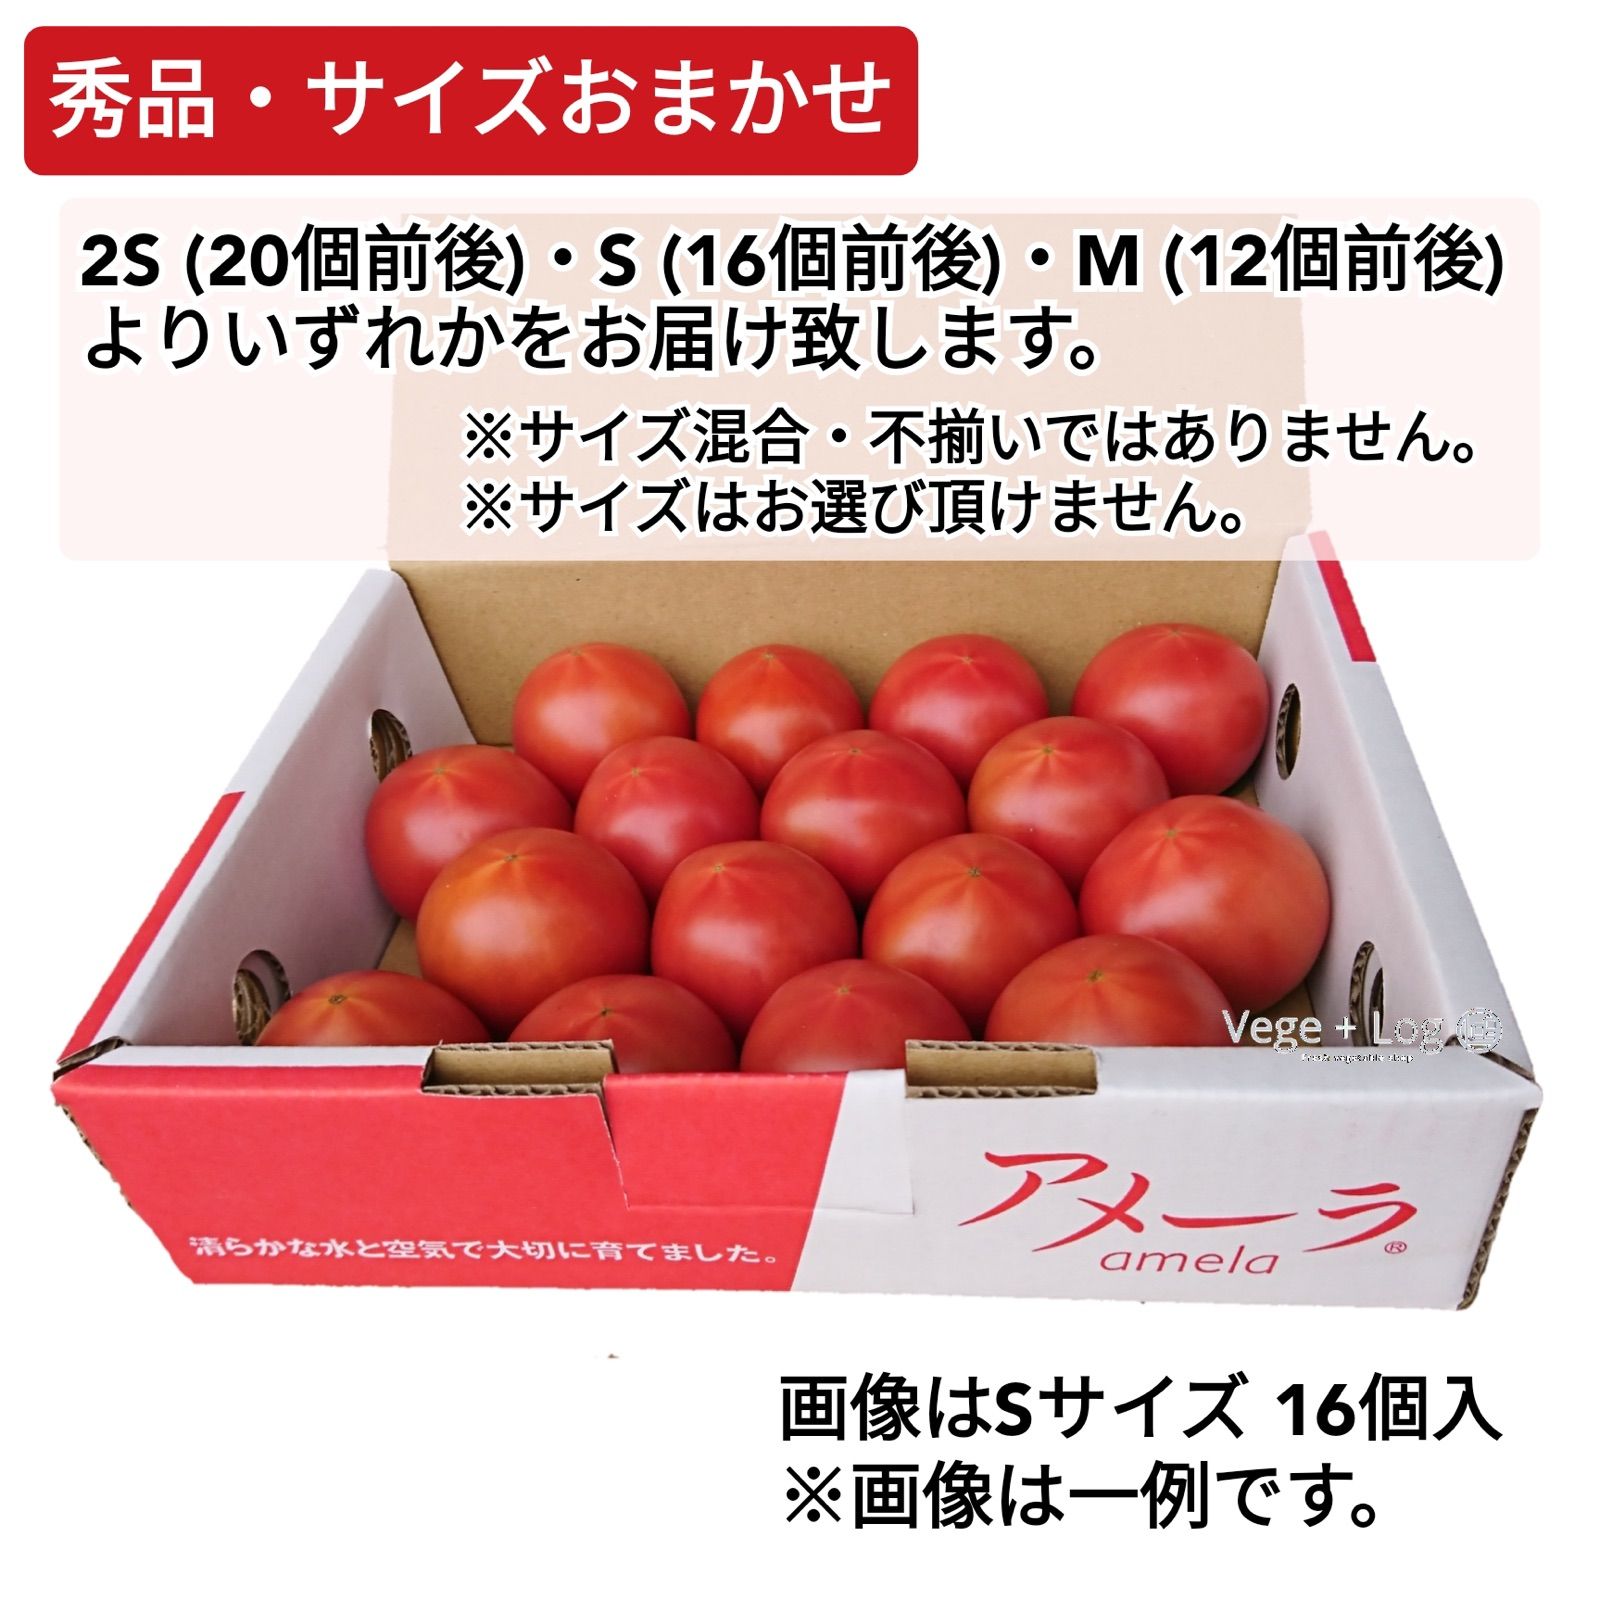 話題の人気 静岡県 ”高糖度フルーツトマト アメーラ” 大きさおまかせ 約1kg ほんのちょっと訳あり 化粧箱入り 